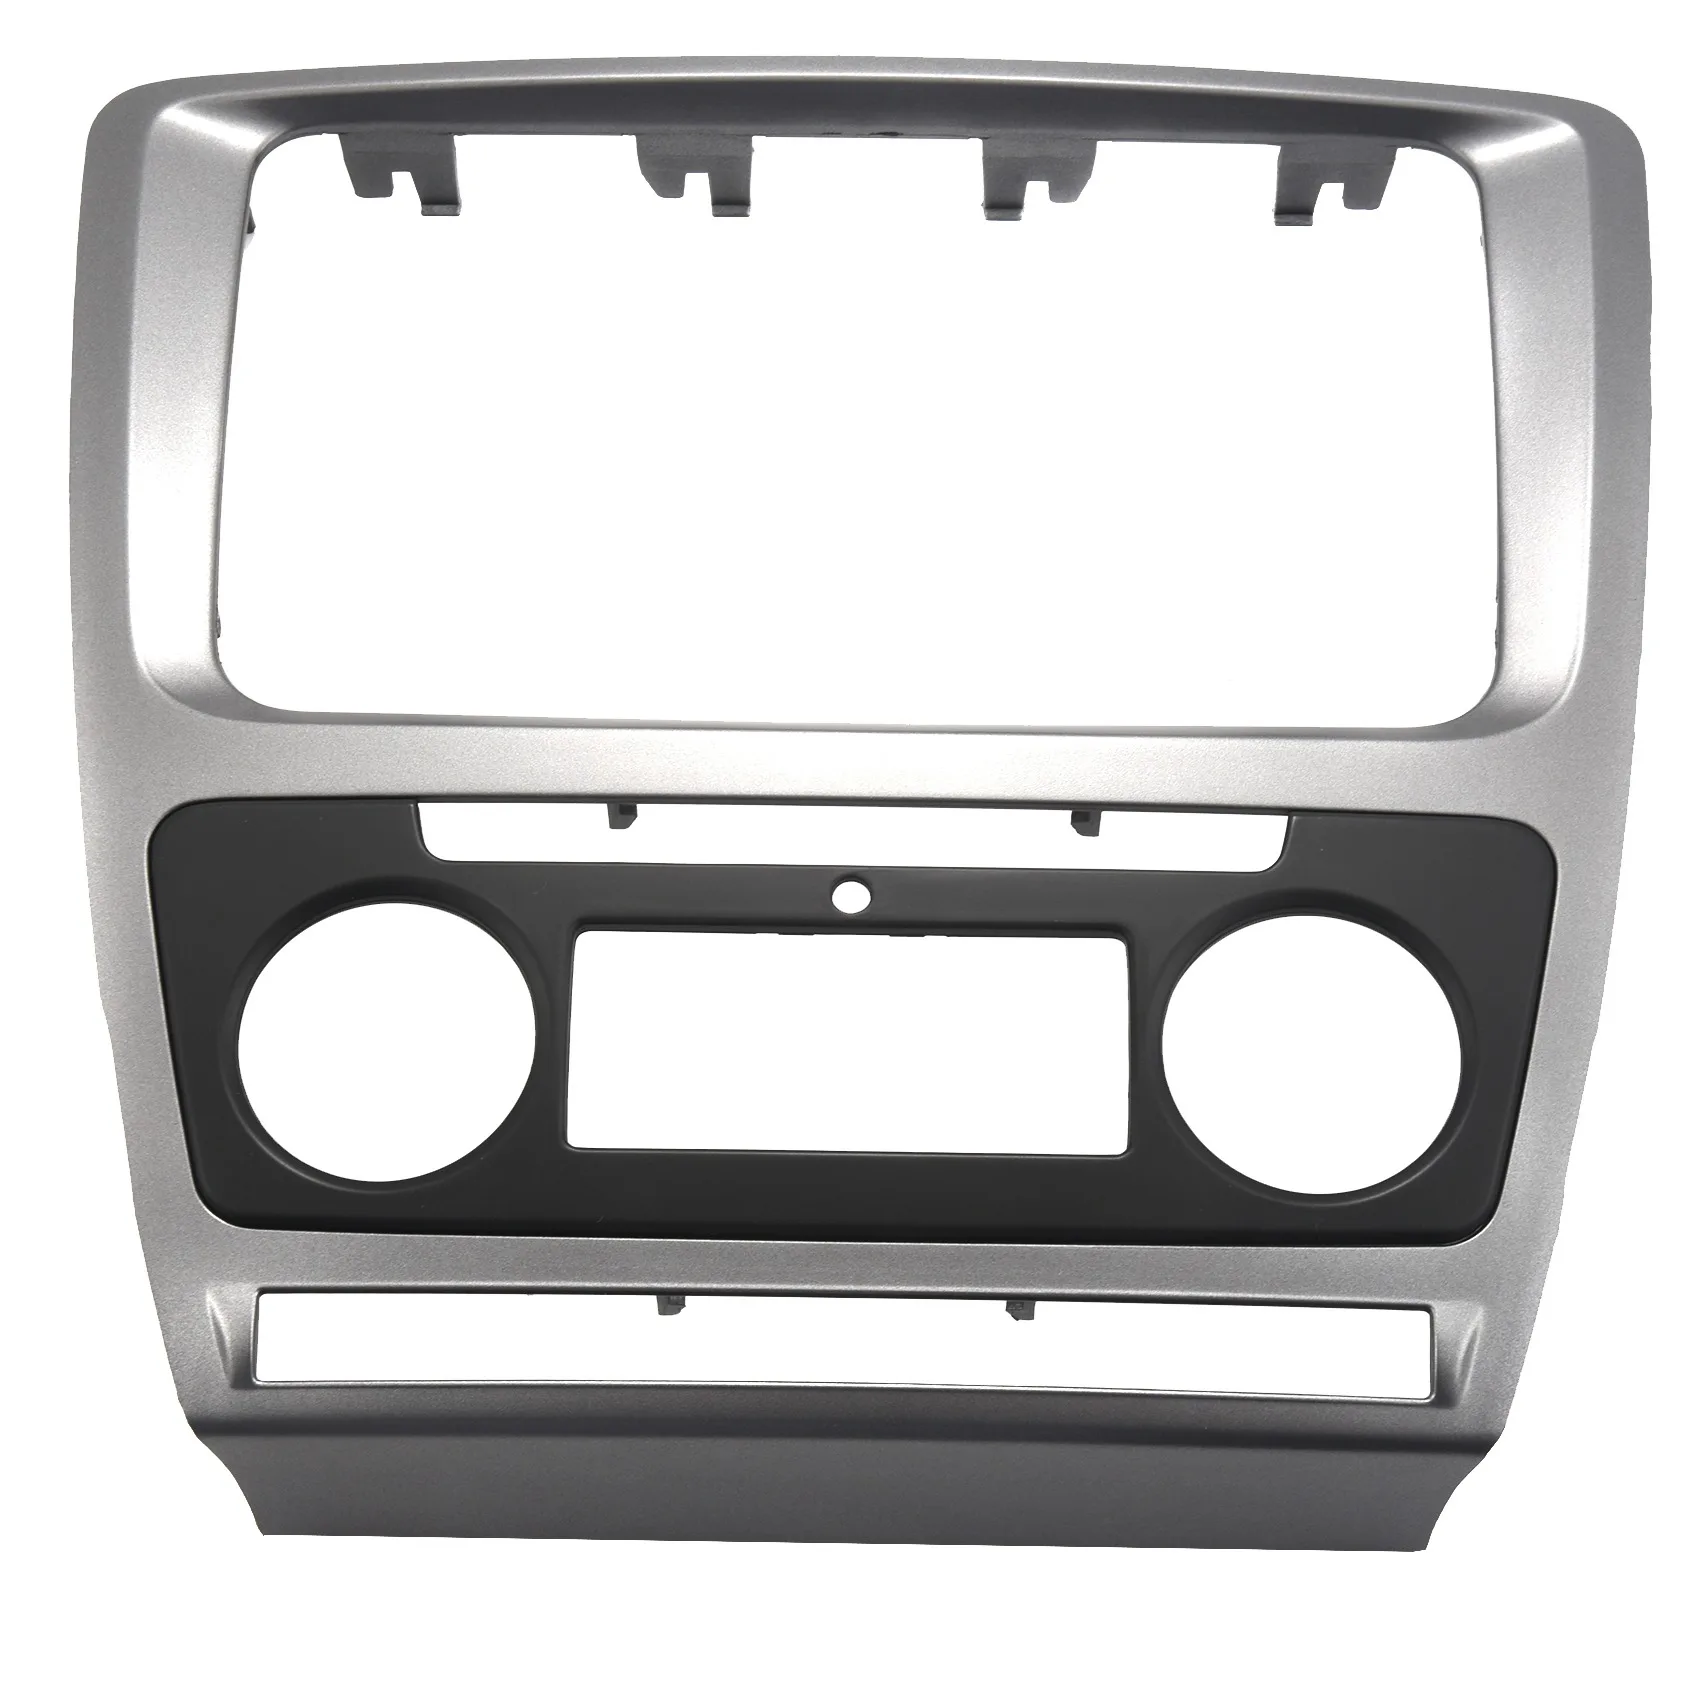 Панель радио 2 Din для Skoda Octavia o Крепление стереопанели, Монтажный комплект для приборной панели, адаптер для отделки рамы